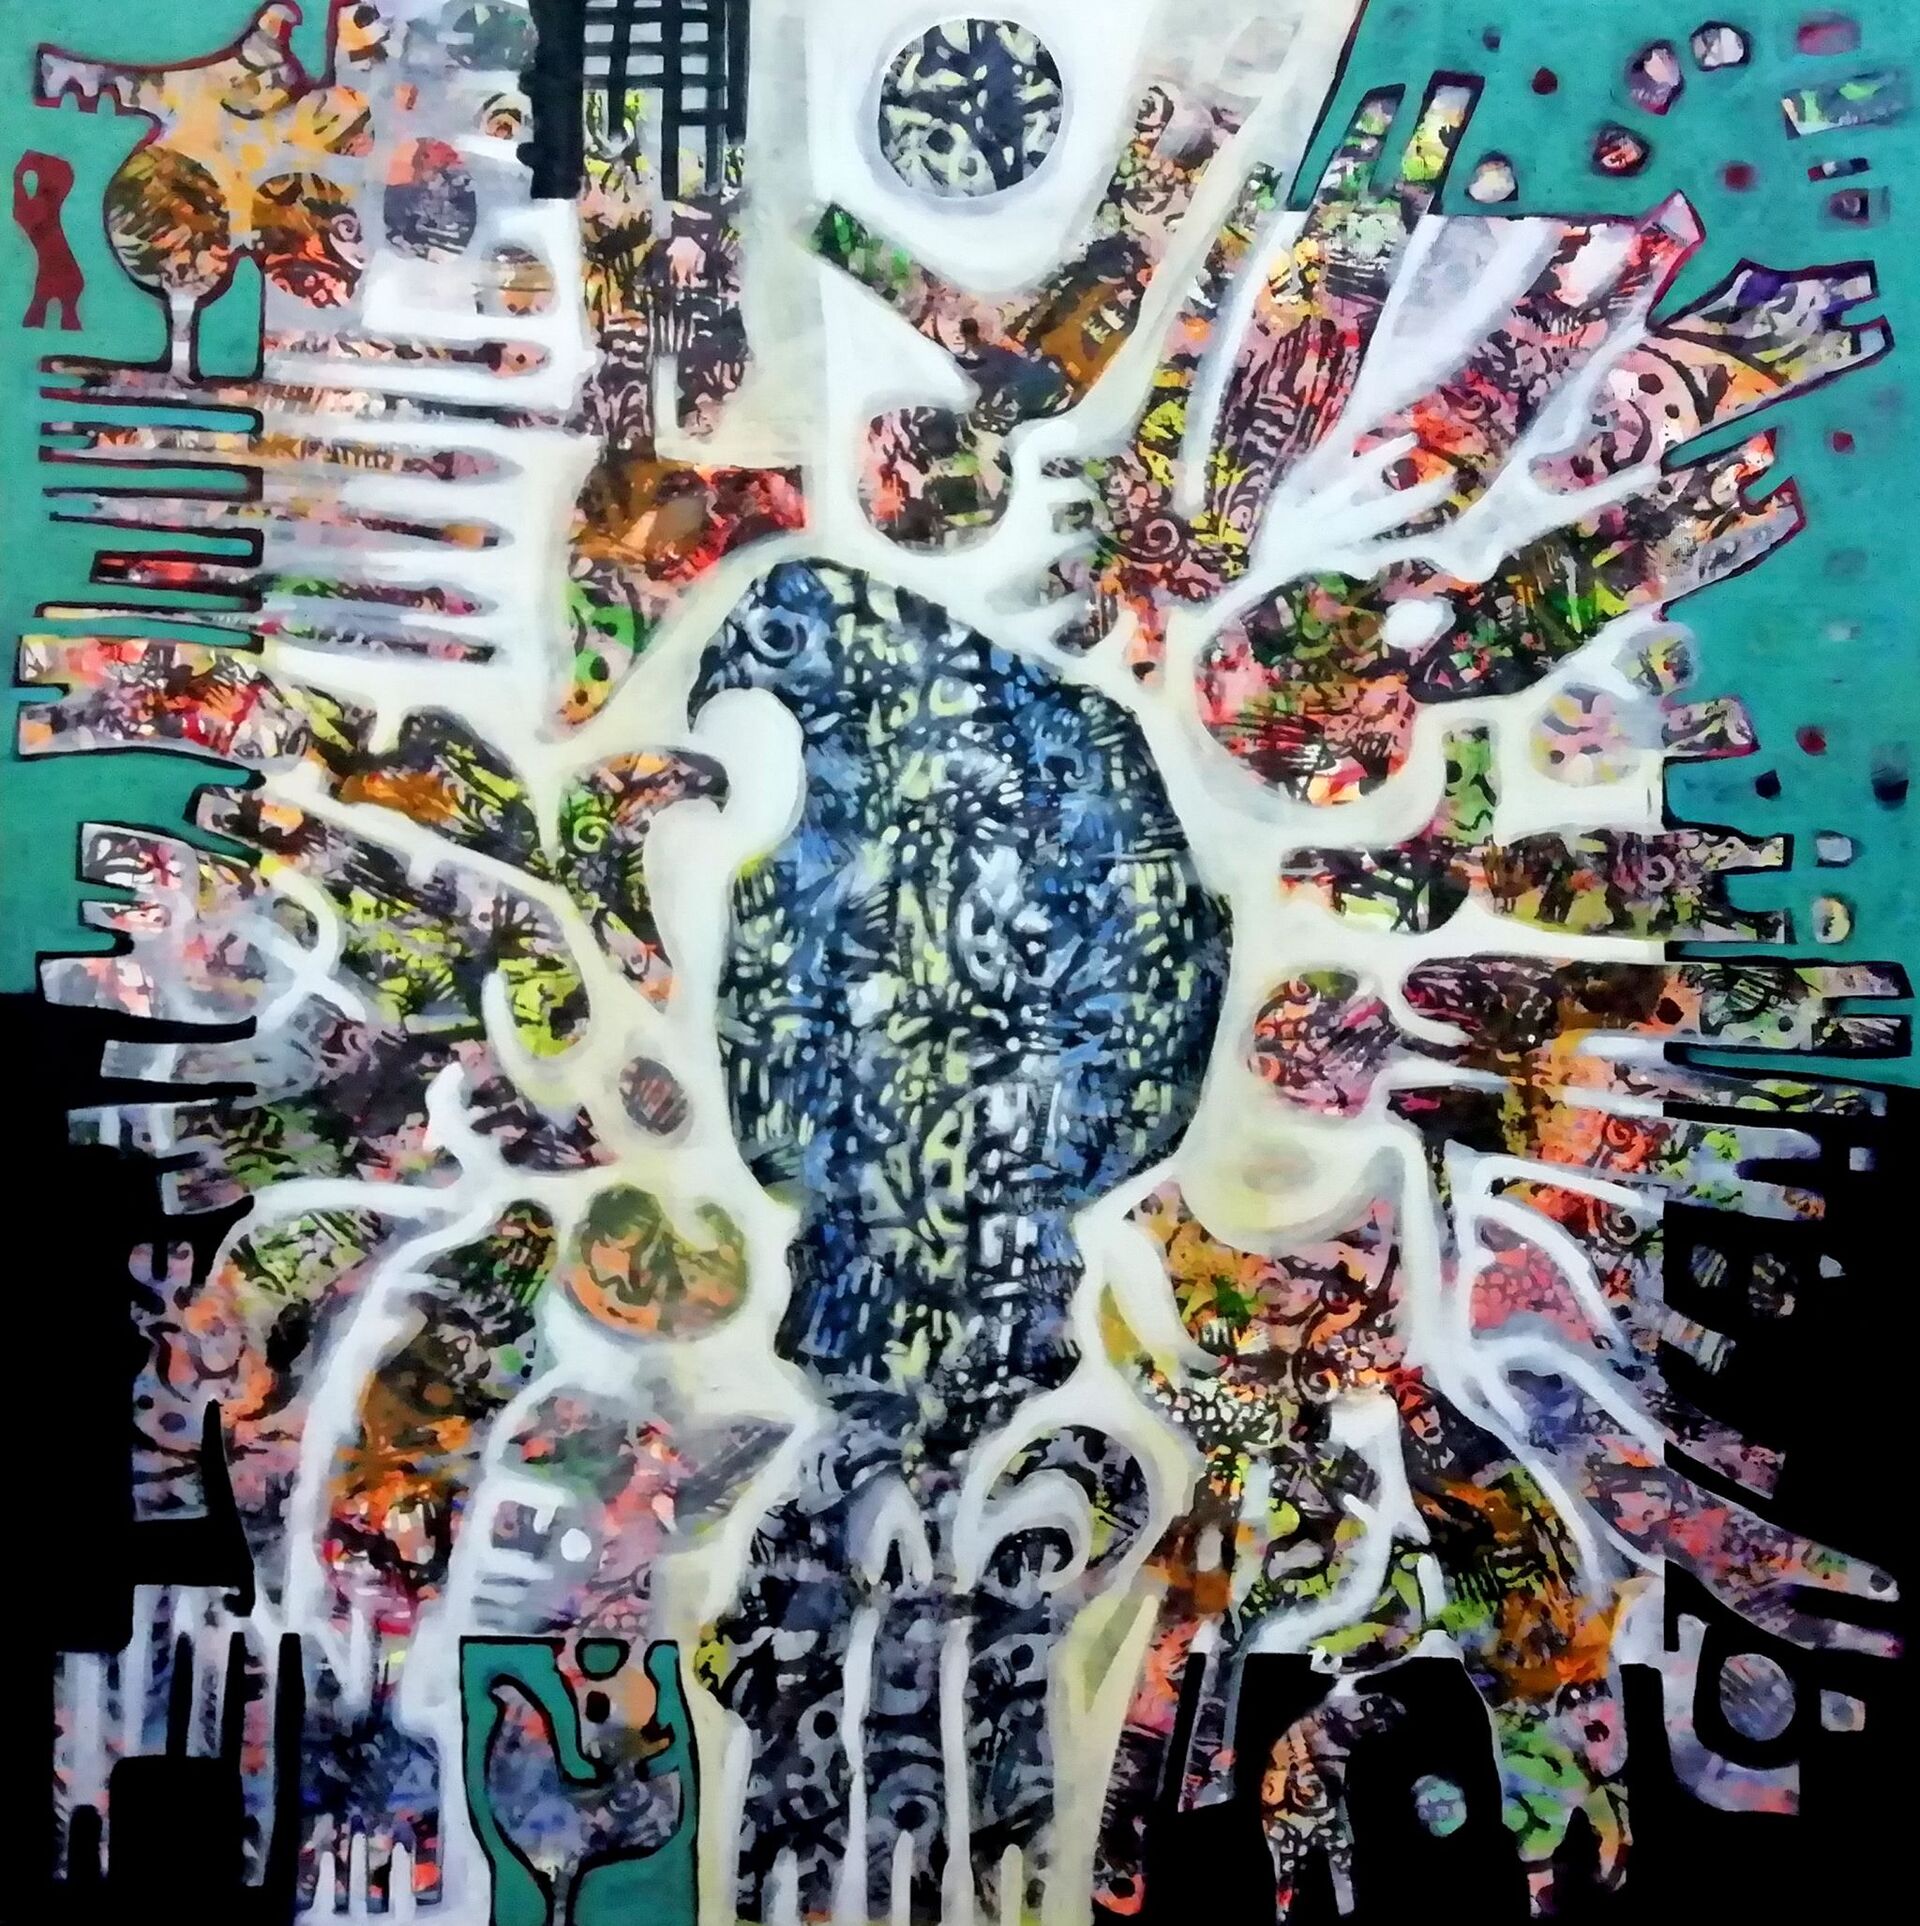 الفن انعكاس للواقع... معتز العمري فنان فلسطيني يجسد القضية بريشة سحرية - سبوتنيك عربي, 1920, 28.04.2021